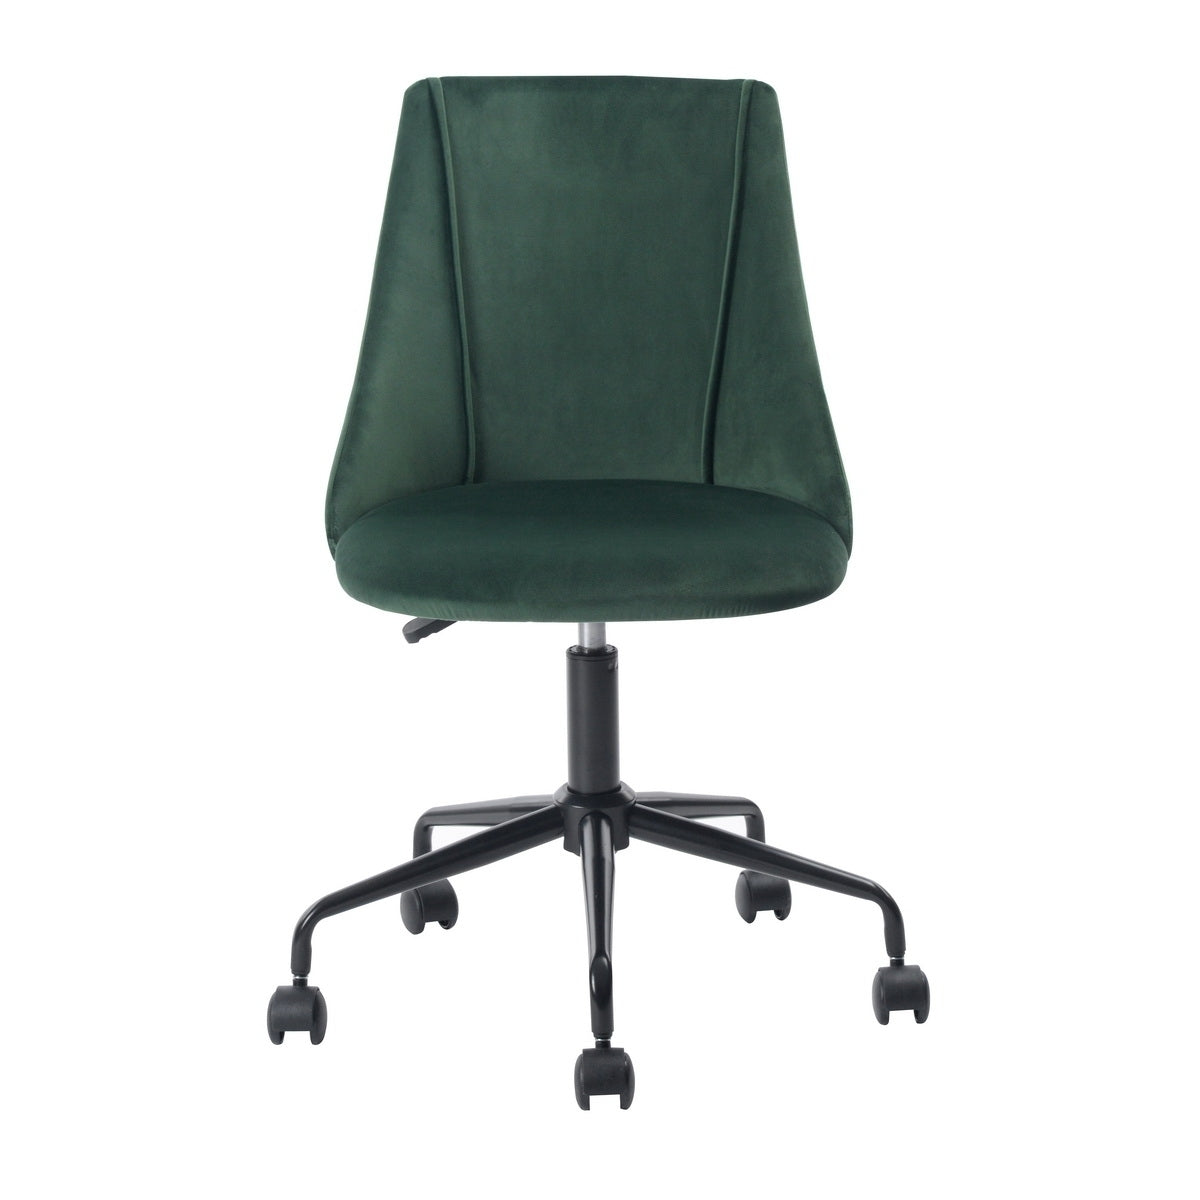 Upholstered Velvet Home Office Chair